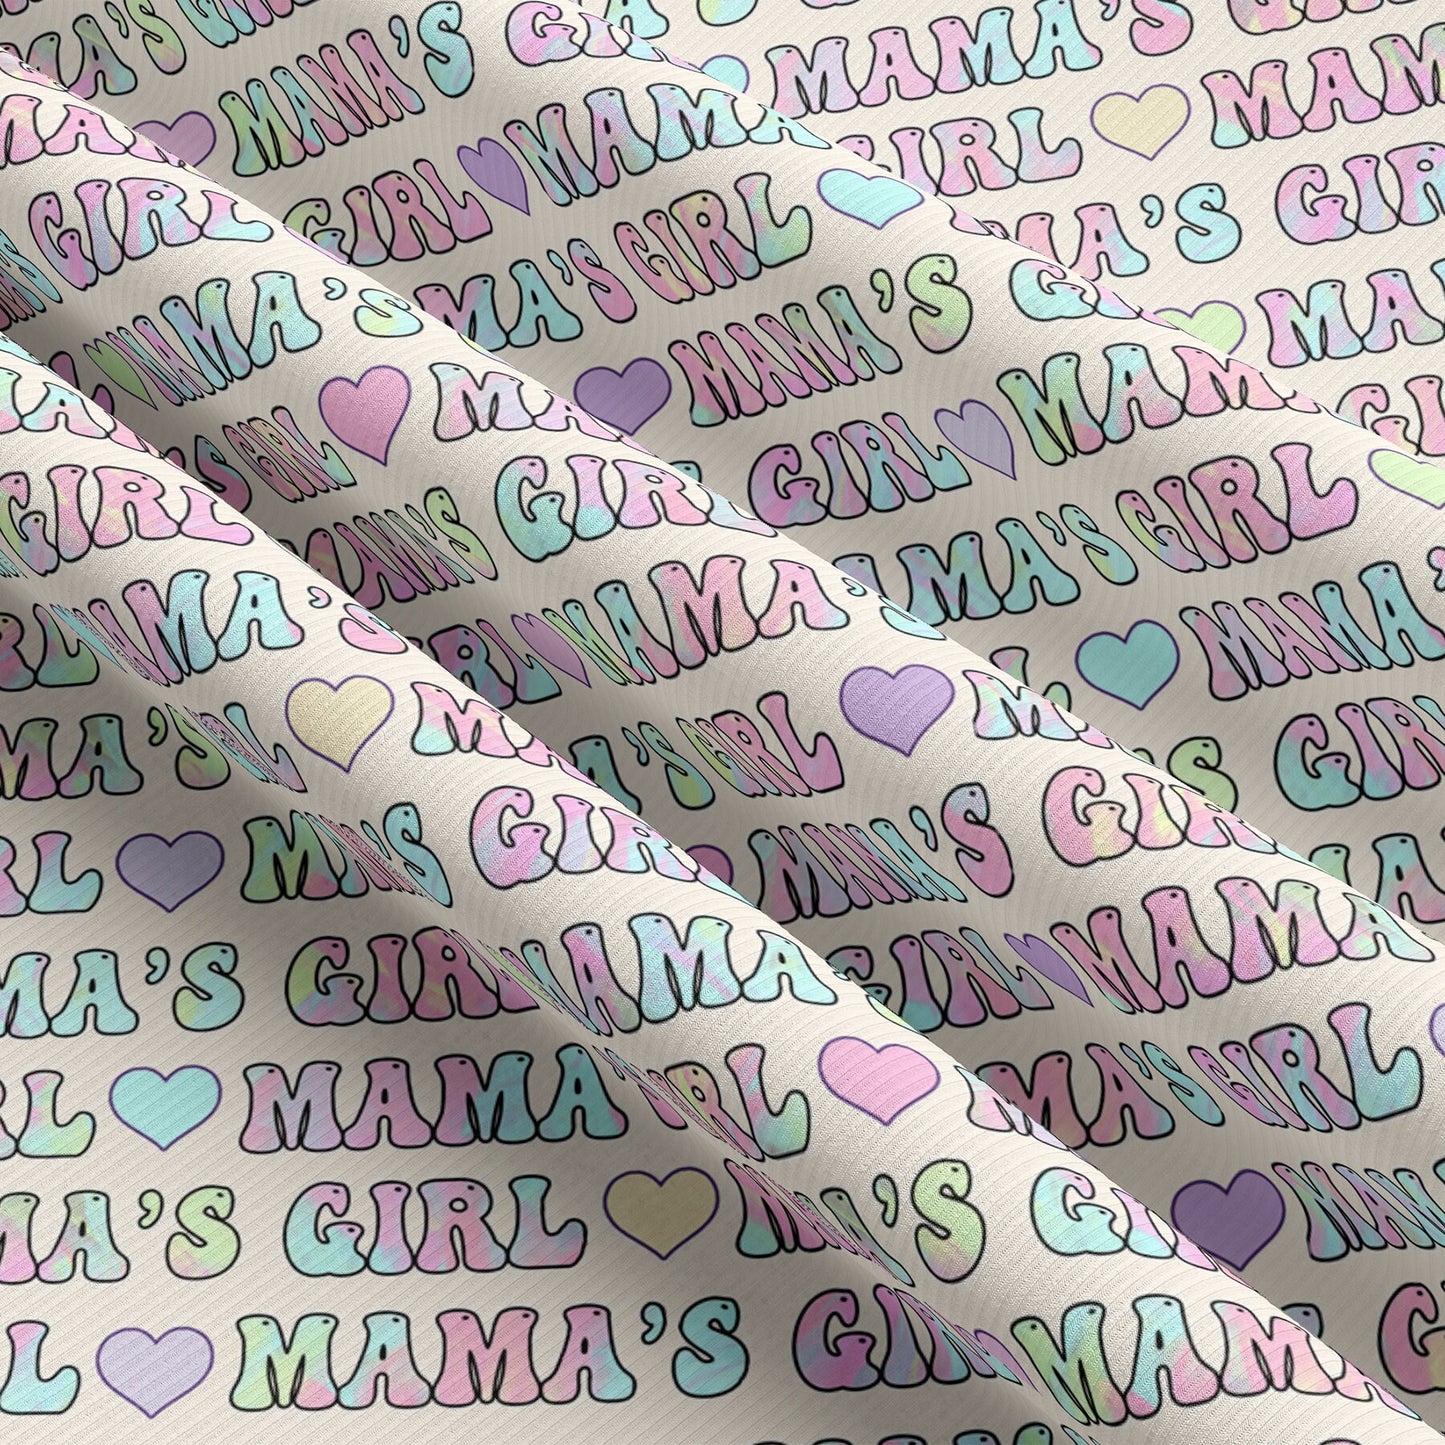 Mamas Girl Rib Knit Fabric RBK1598